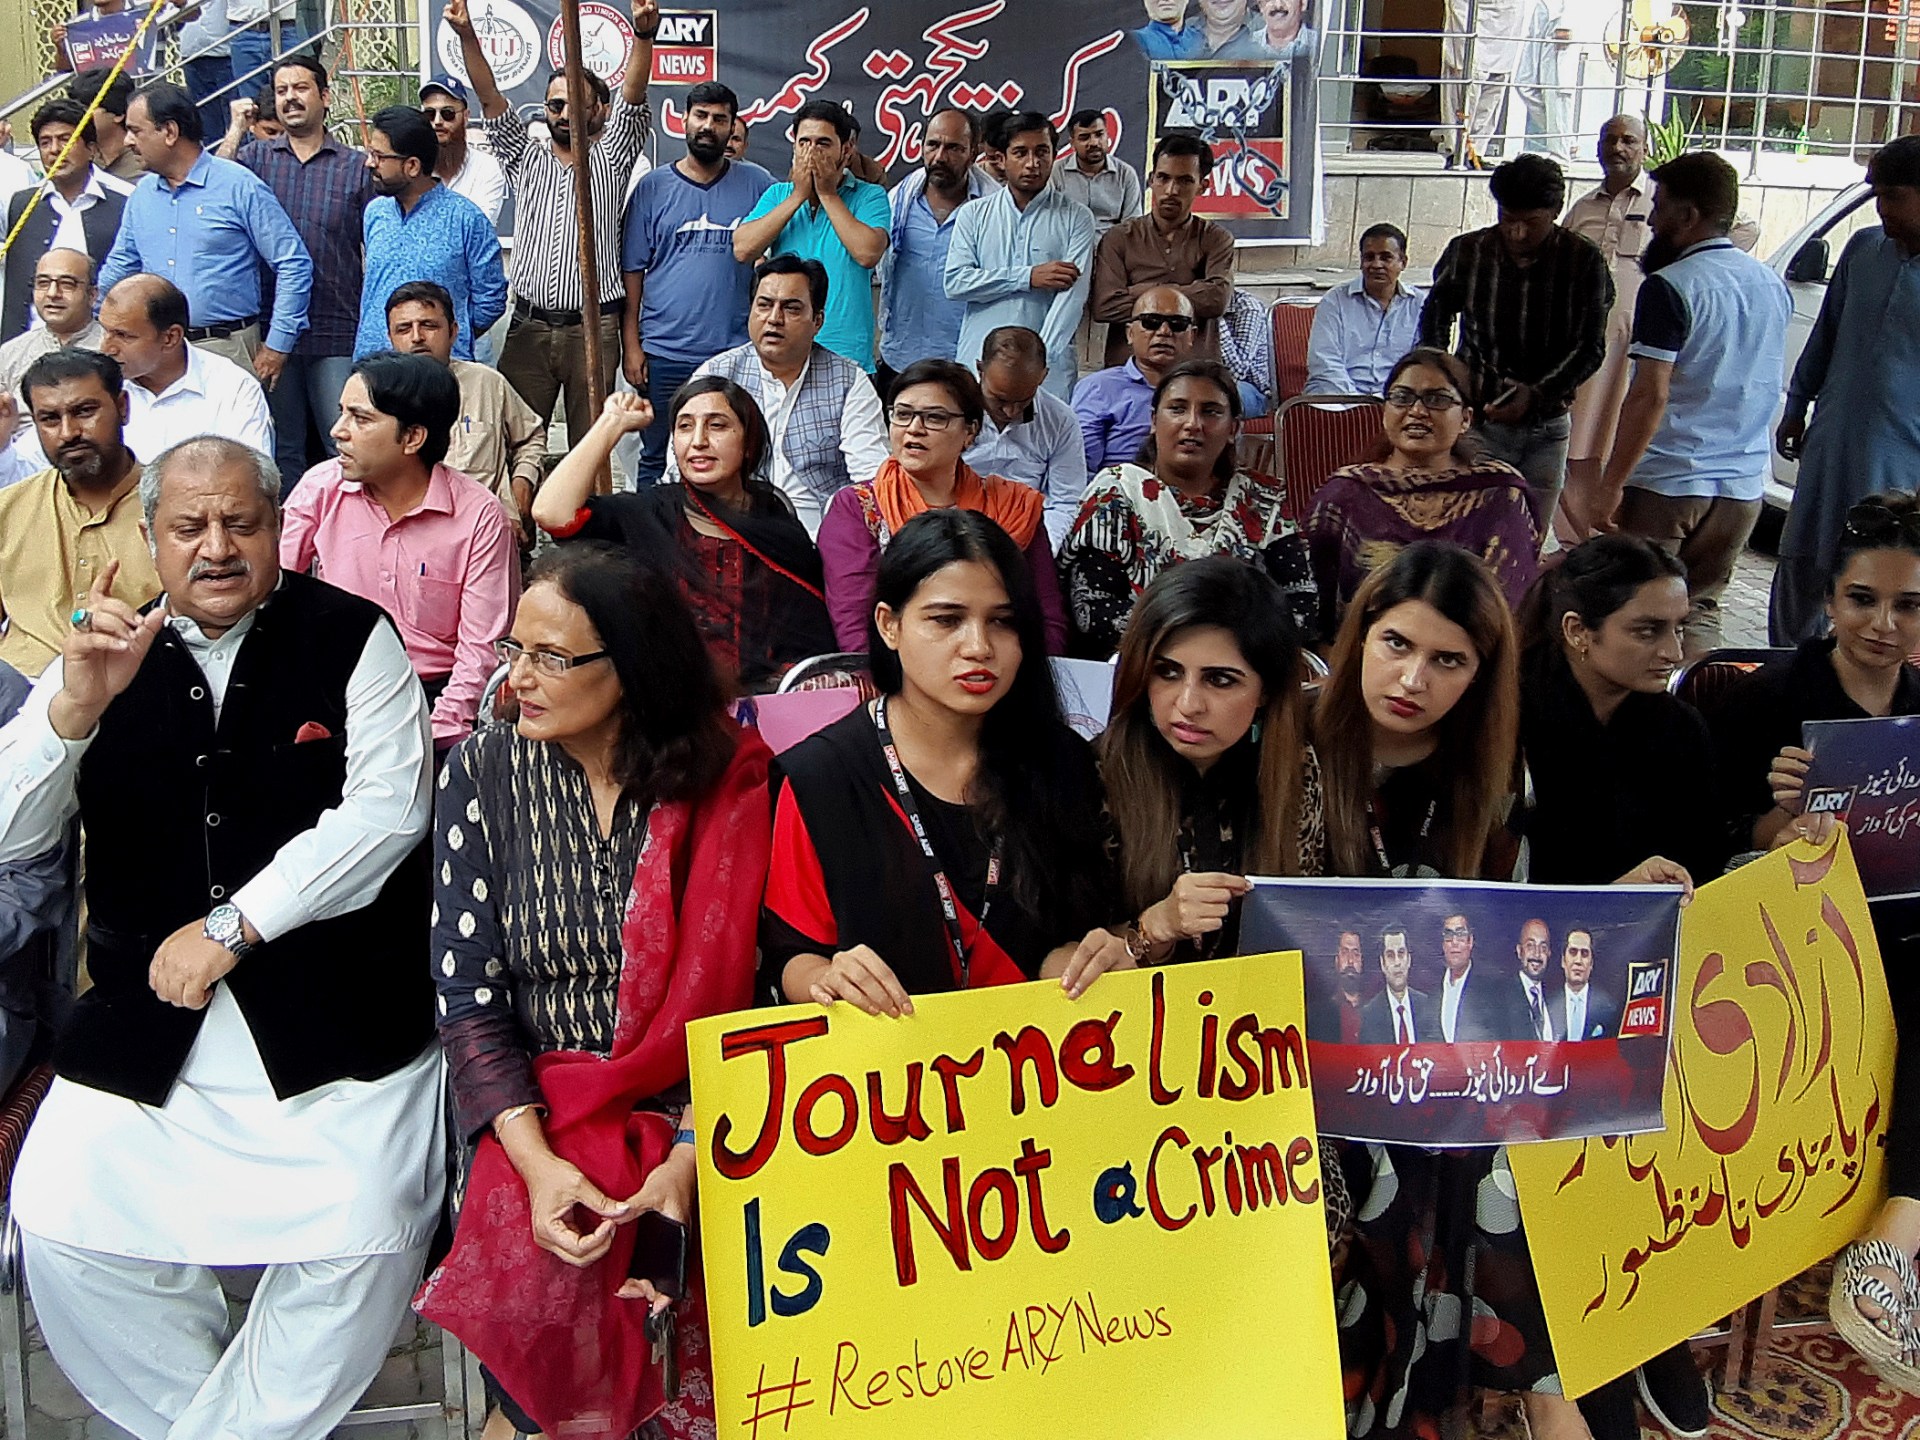 Pengadilan Pakistan membatalkan undang-undang penghasutan demi memenangkan kebebasan berbicara |  Berita Hak Asasi Manusia